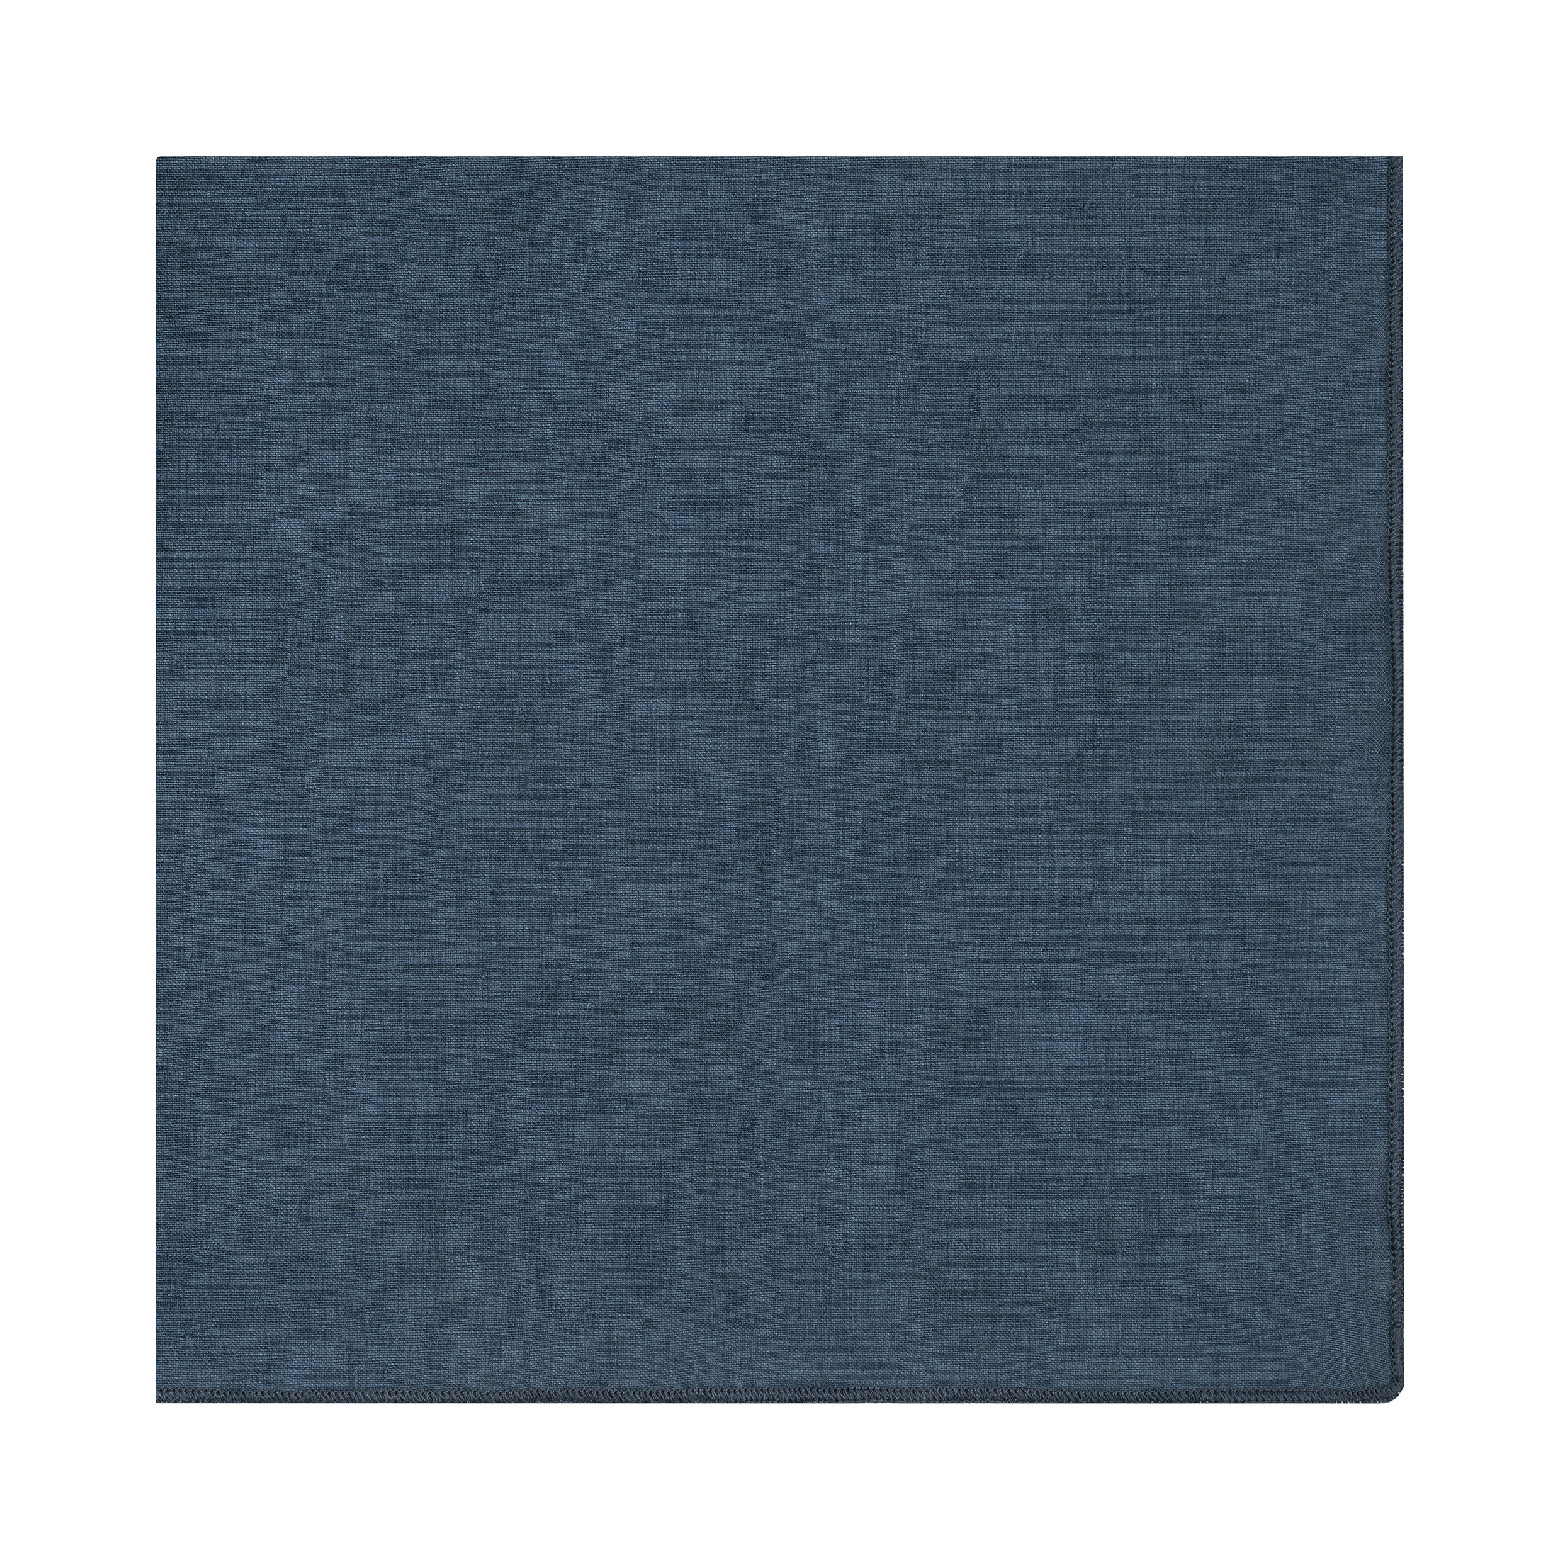 BLOMUS Ubrousek lněný modrý 42x42 cm lineo